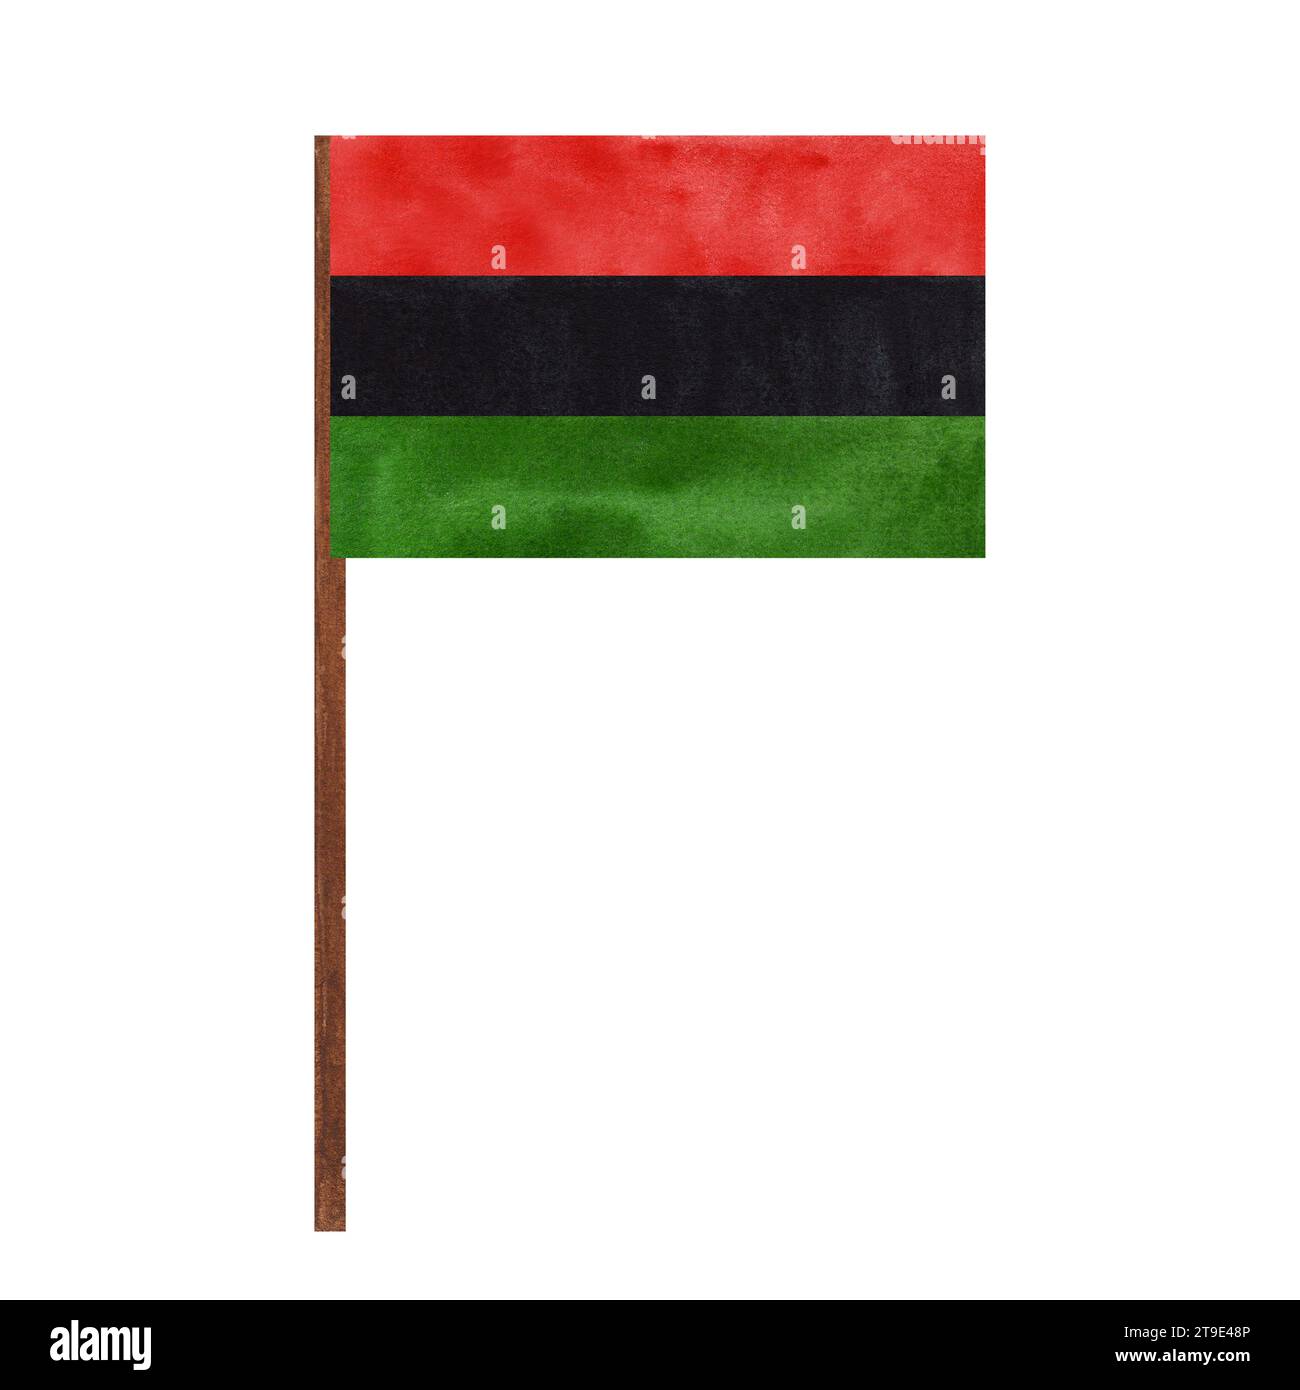 Panafrikanische UNIA-Flagge, rote schwarze grüne horizontale Streifen. Juneteenth, Black History Month, Kwanzaa. Handgezeichnete Aquarellillustration isoliert Stockfoto